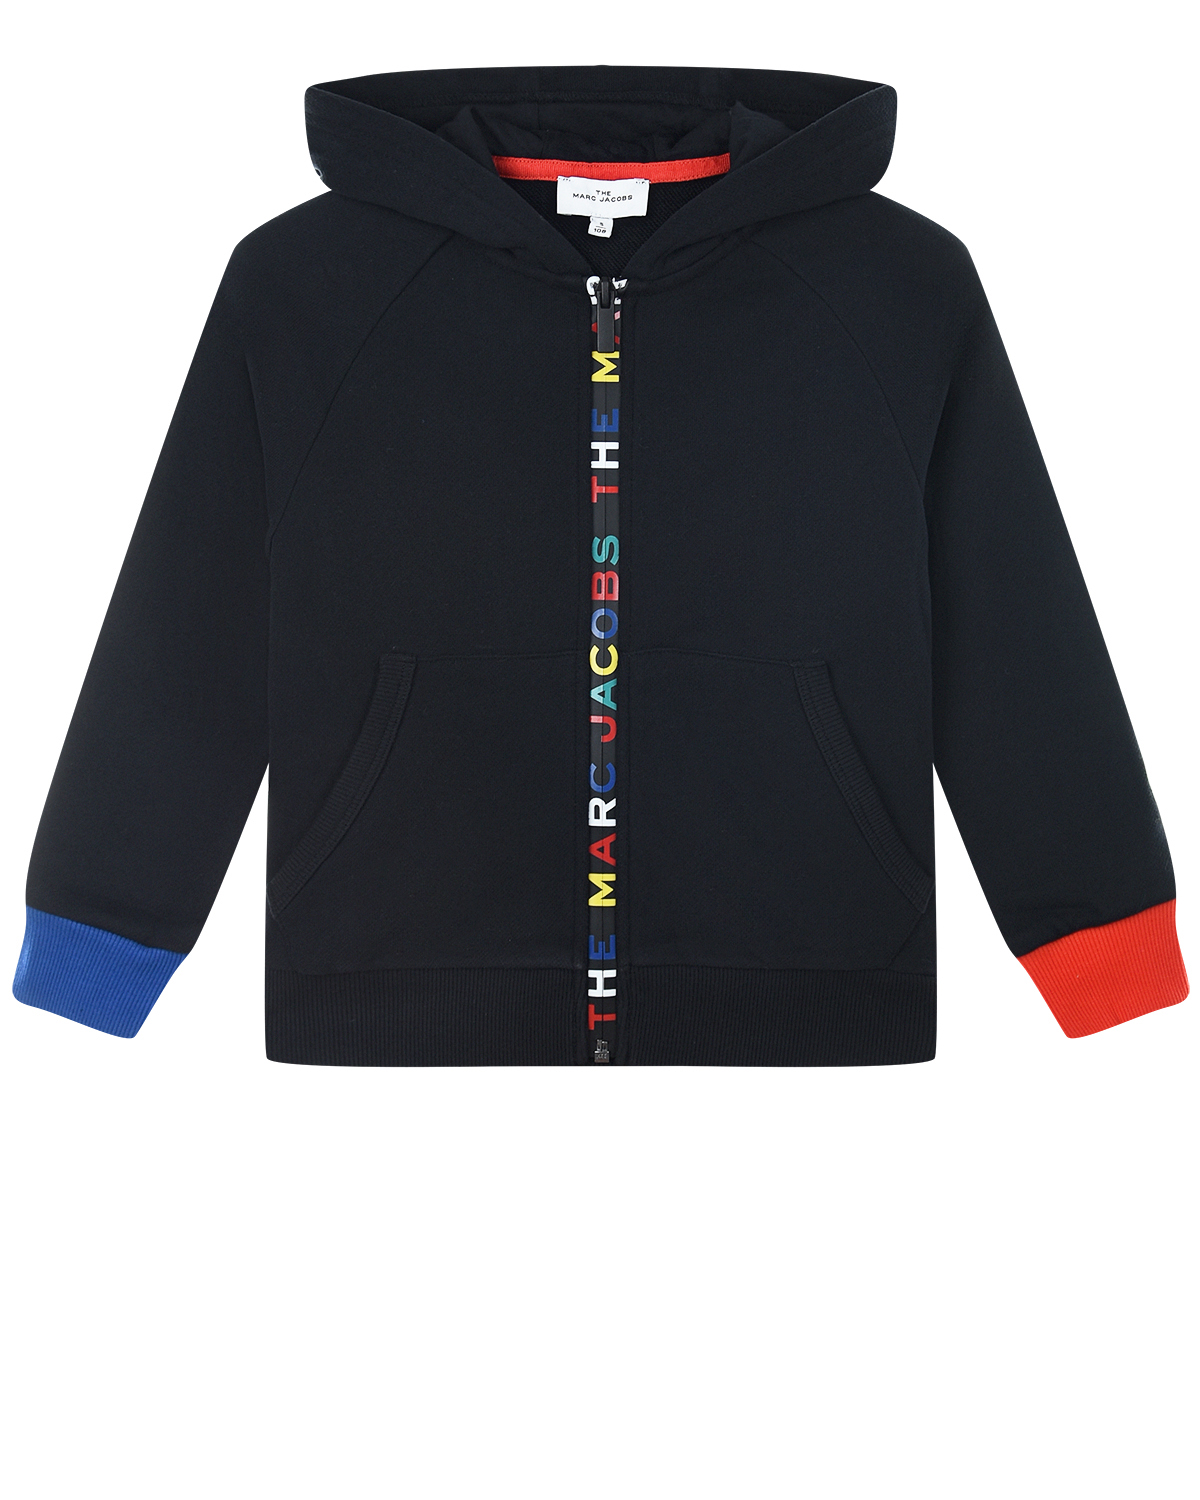 Черная спортивная куртка с разноцветными манжетами Little Marc Jacobs детская, размер 110 - фото 1